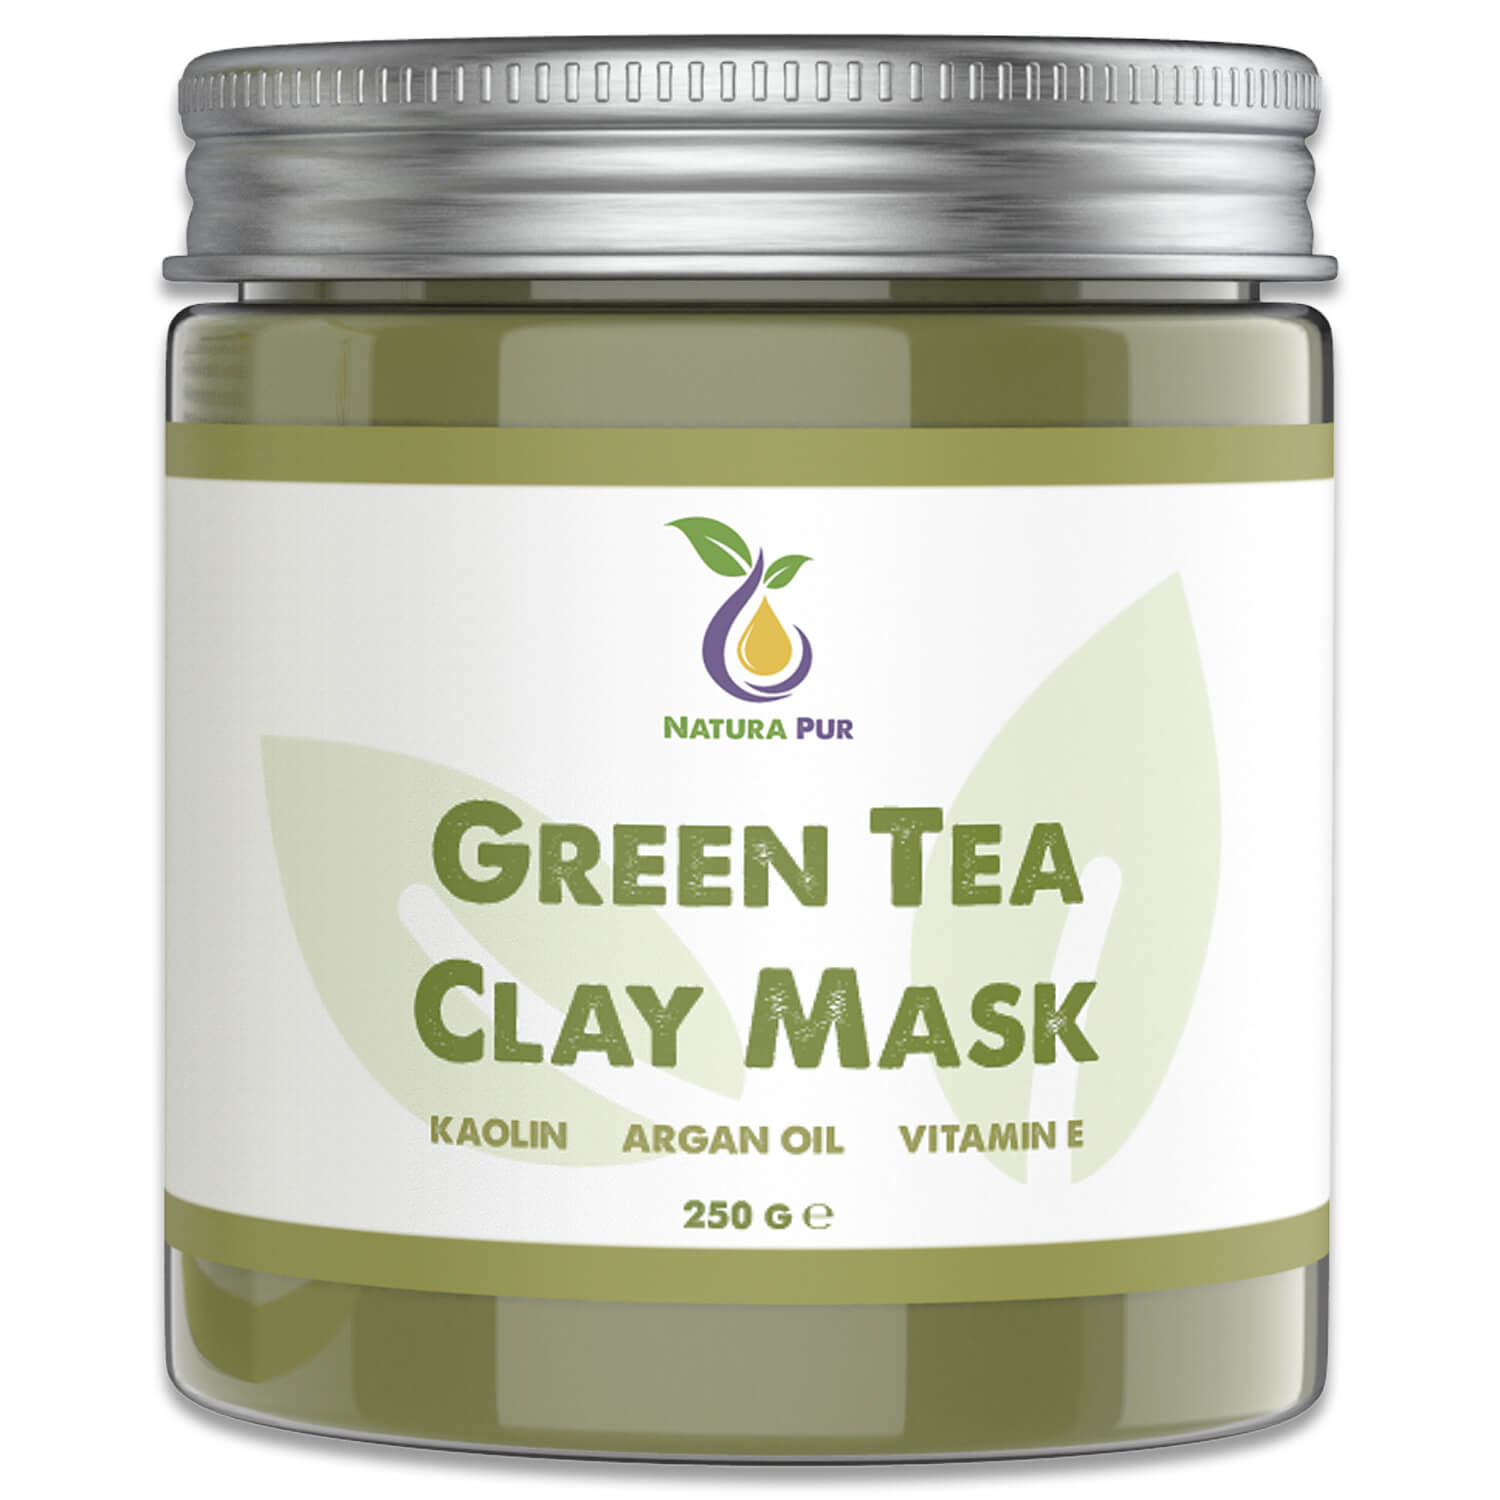 Grüner Tee Gesichtsmaske 250g, vegan